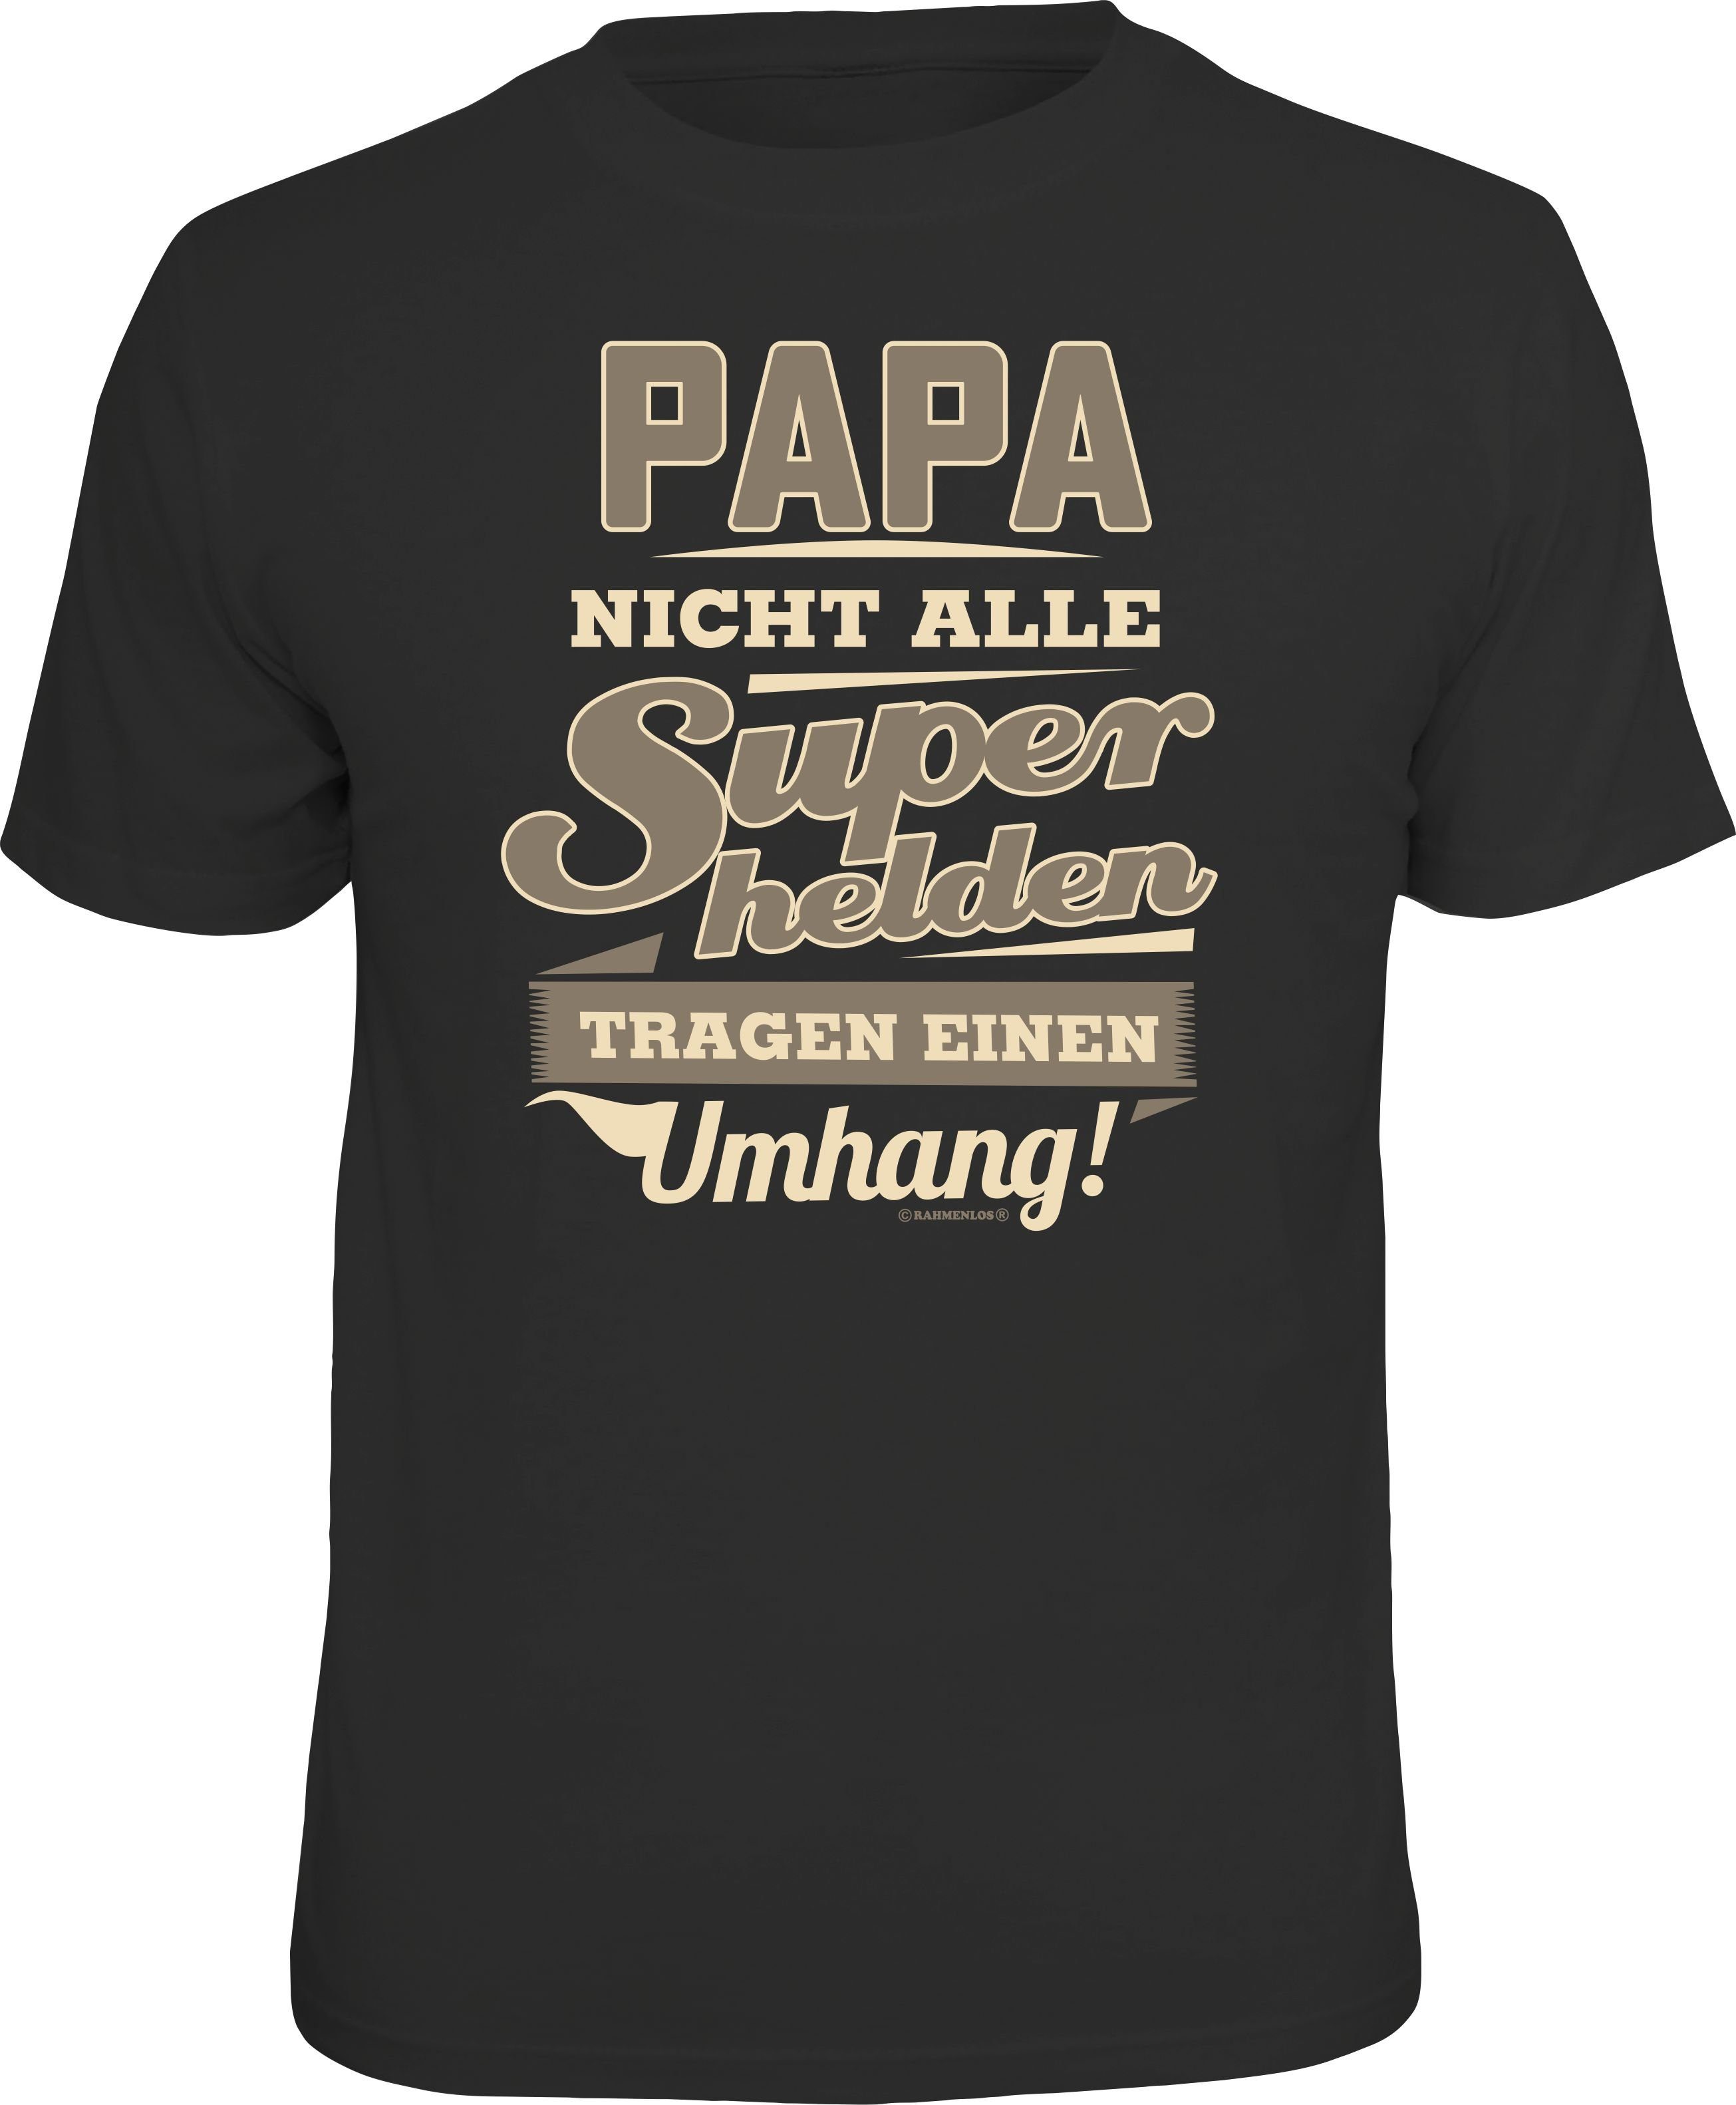 Nach und nach treffen neue Produkte ein! Rahmenlos T-Shirt Das Geschenk für - Papa Väter Superheld